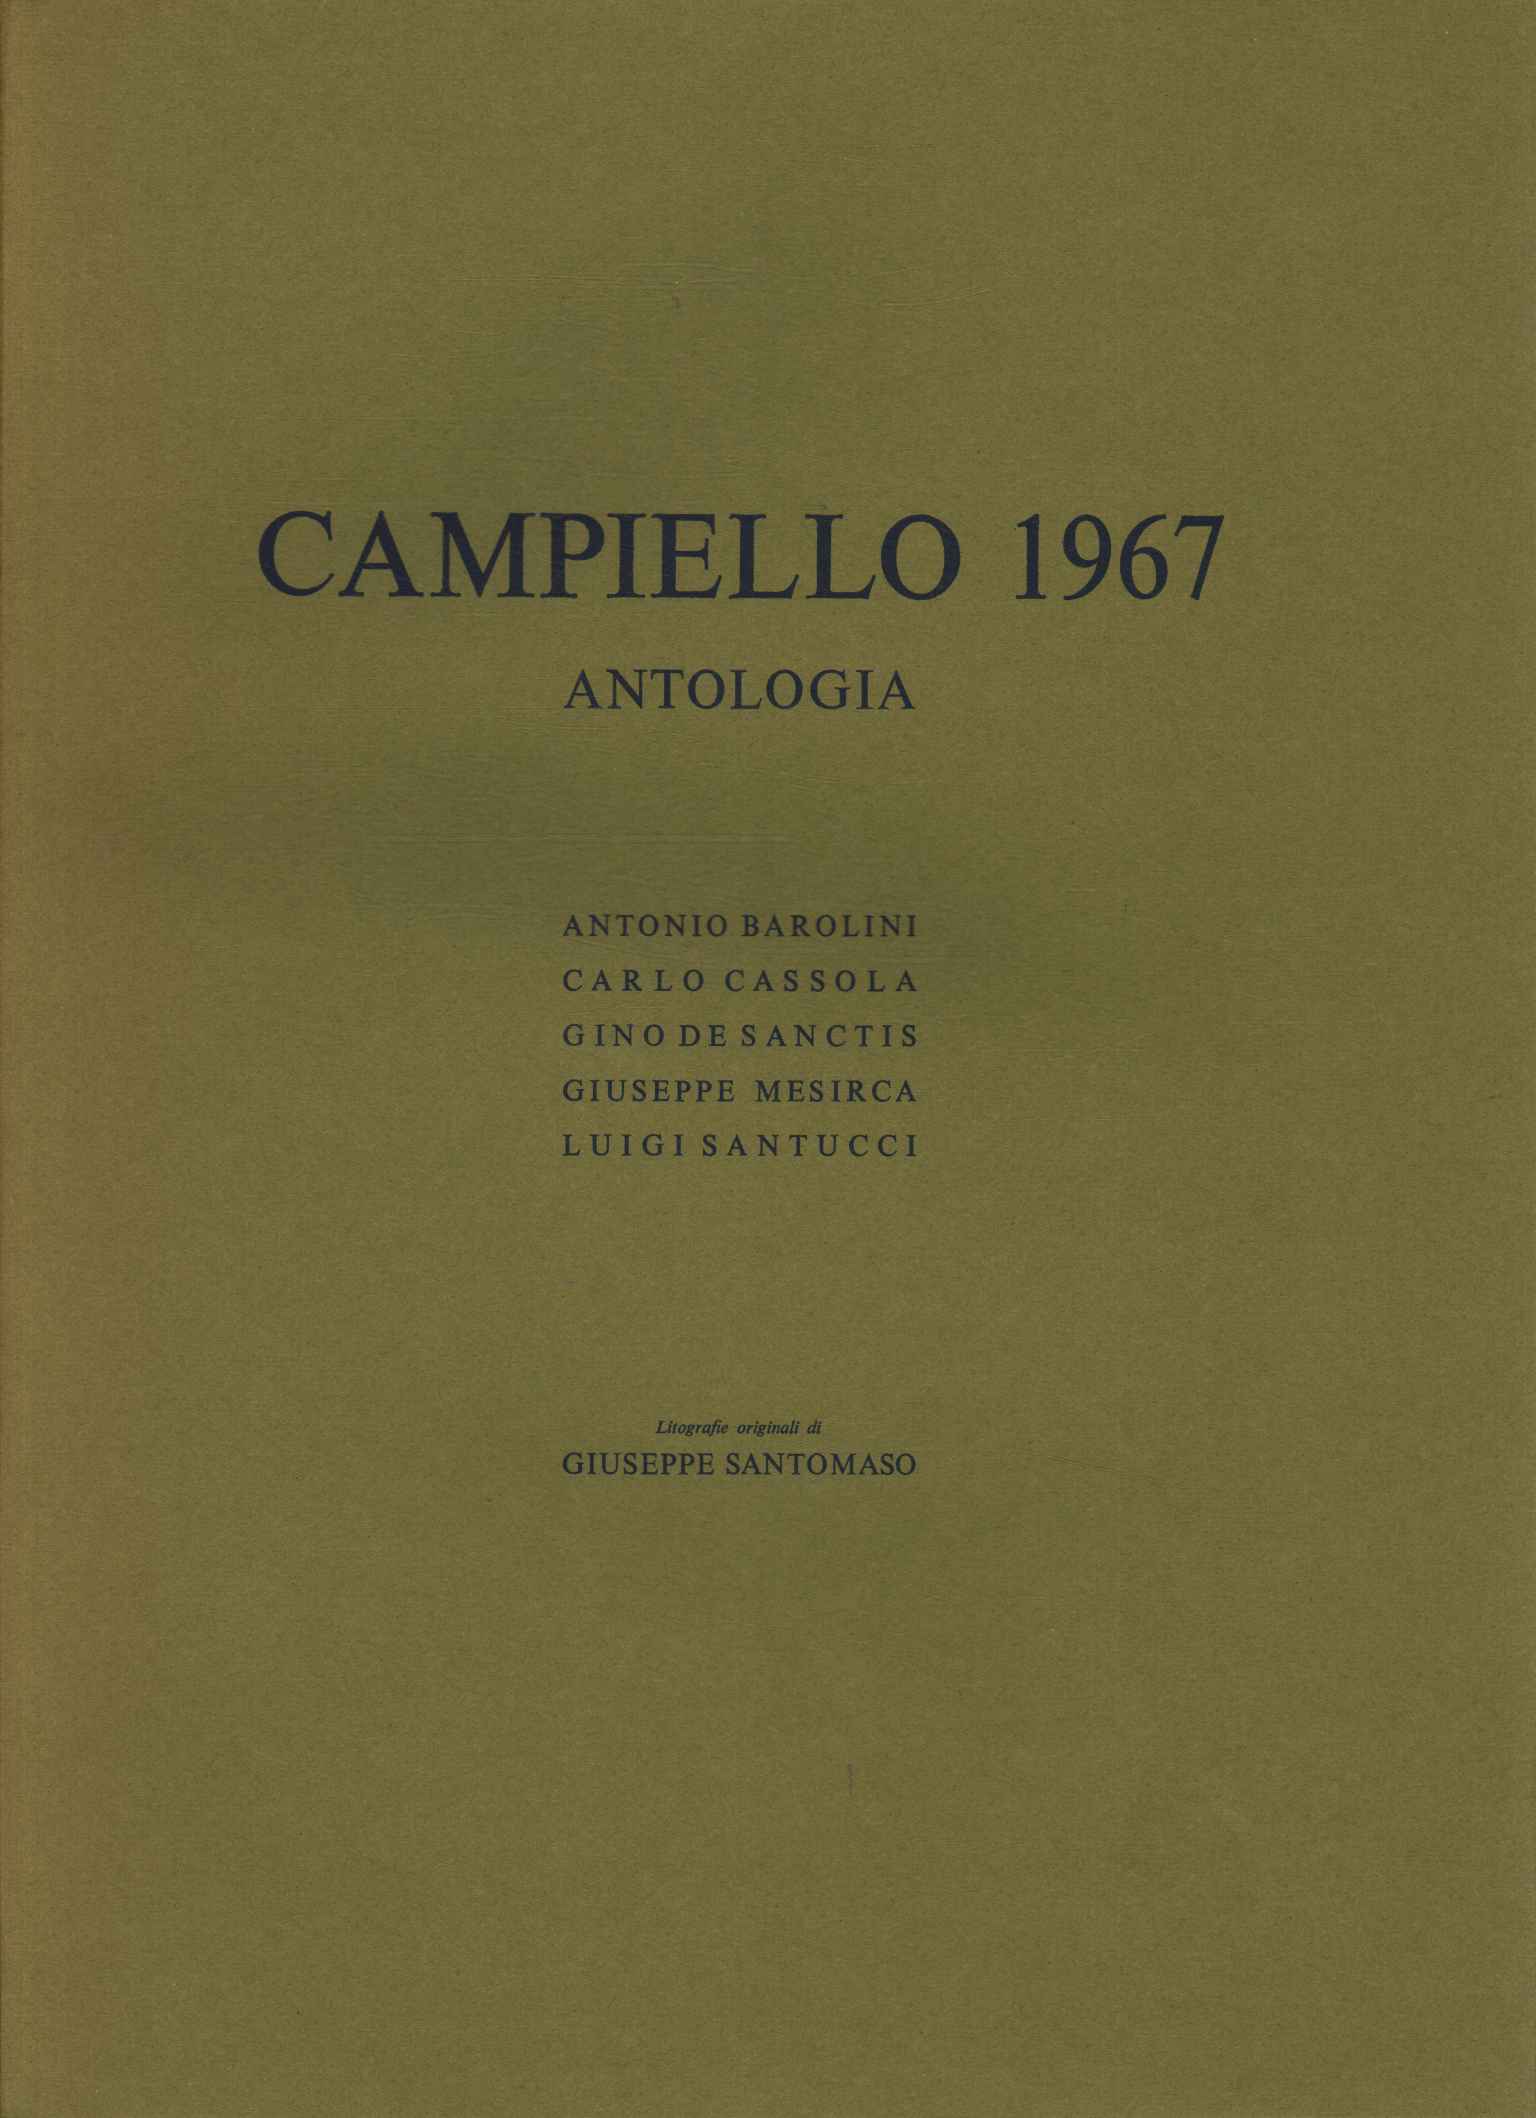 Antología de Campiello 1967